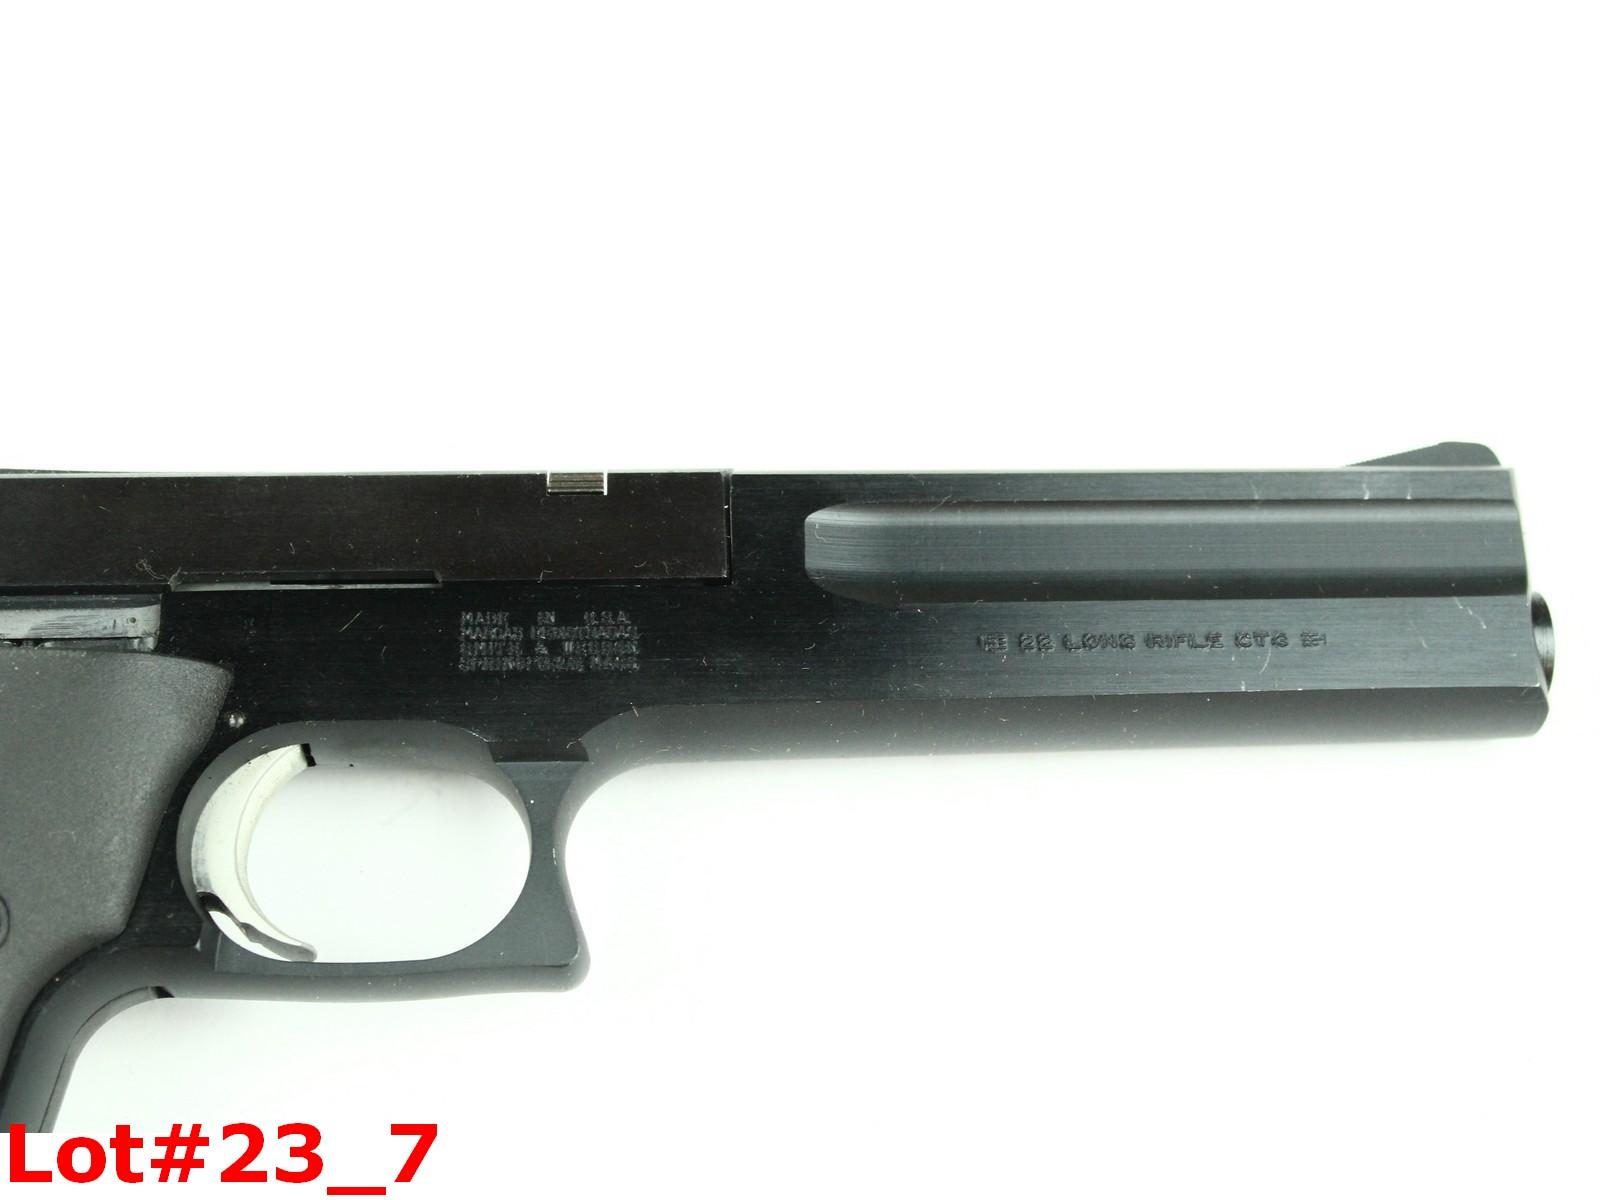 S&W Model 422 22LR Caliber Pistol